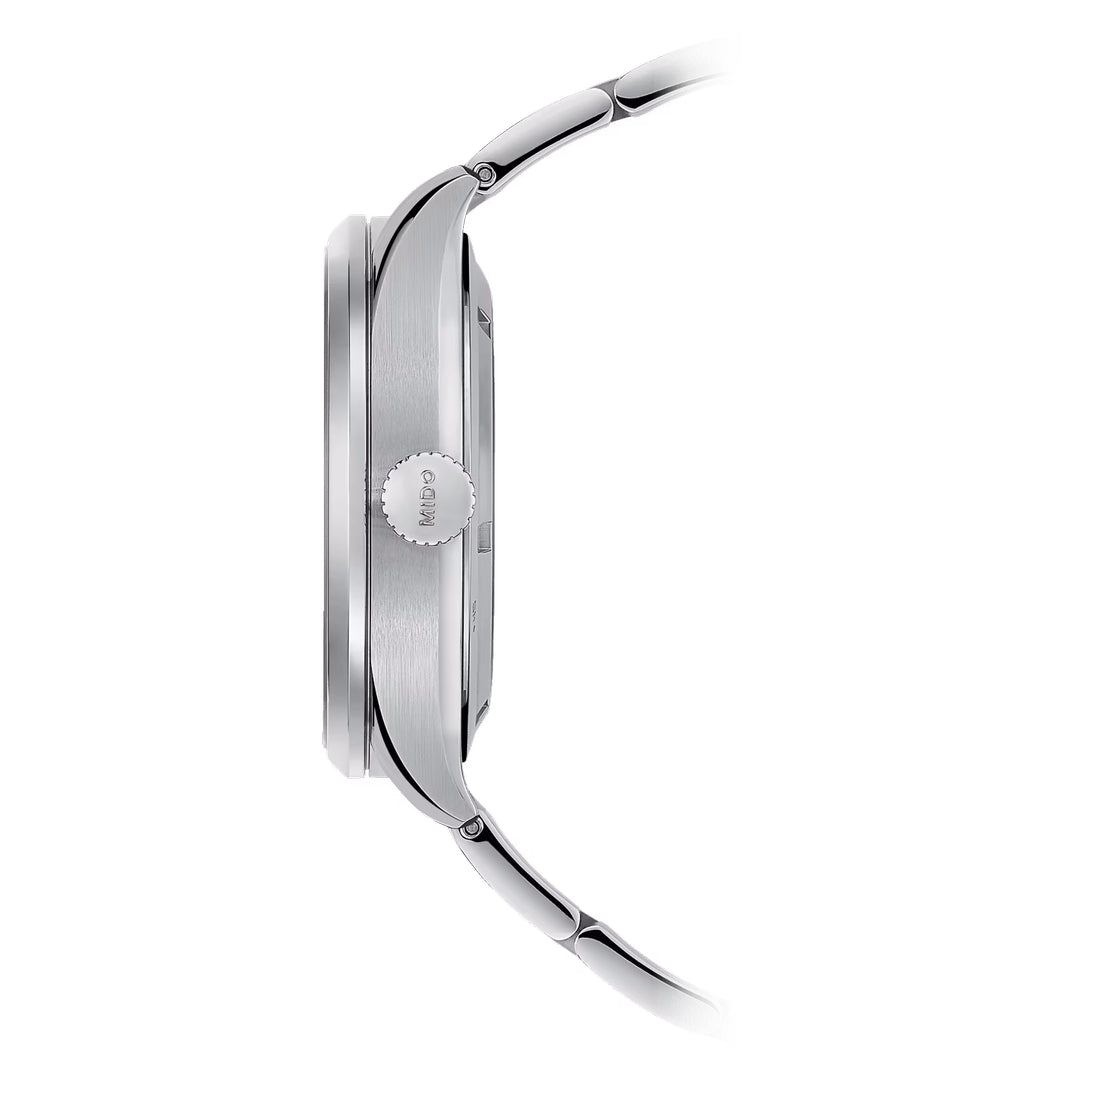 Orologio Mido Multifort M quadrante silver bracciale acciaio